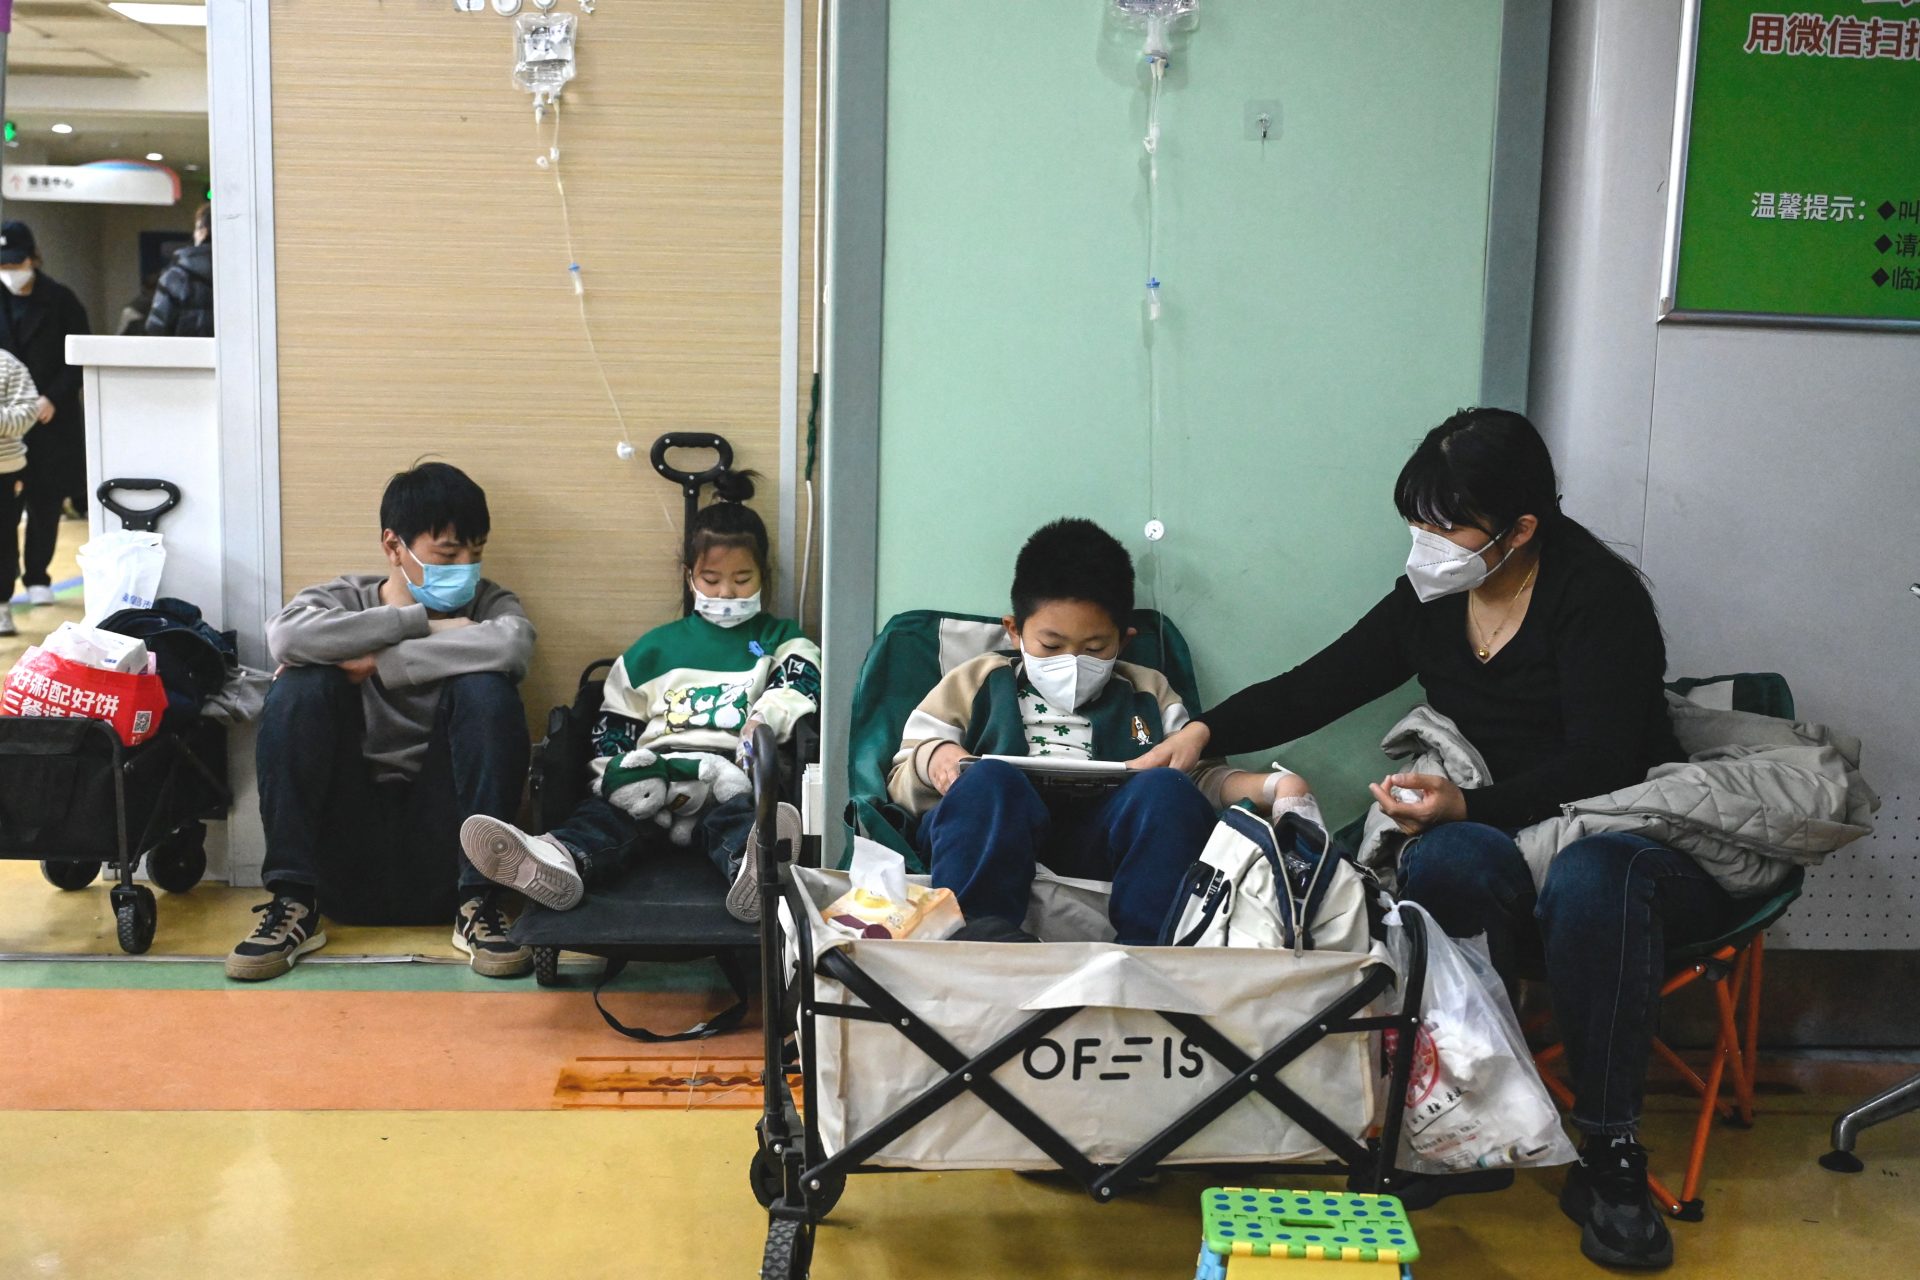 La polmonite infantile in Cina preoccupa l'OMS: il governo cinese risponde